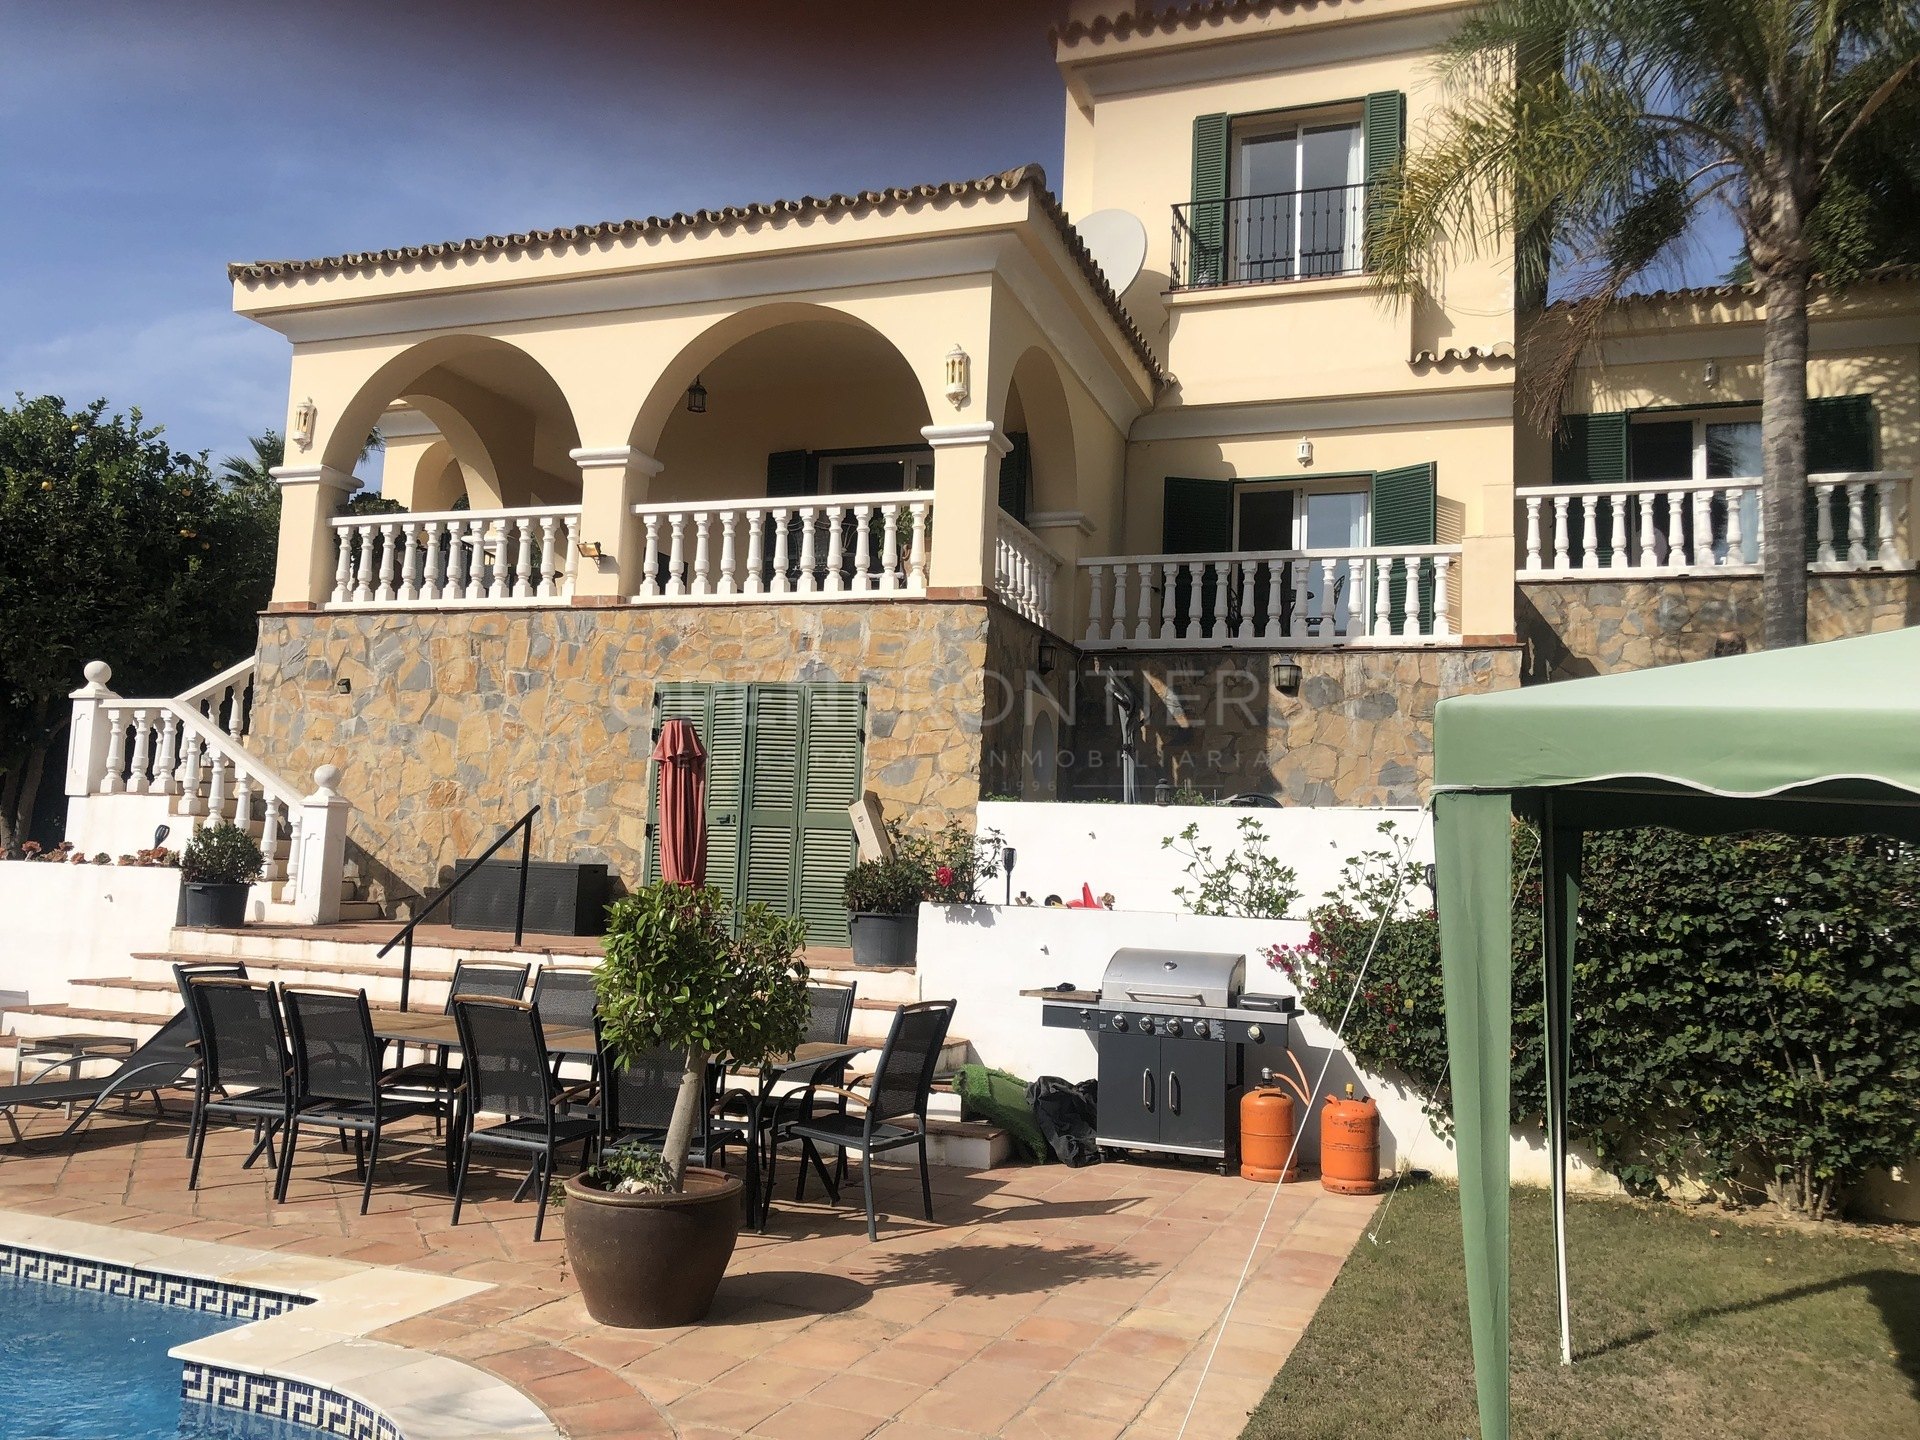 Encantadora villa de 5 dormitorios en Sotogrande Costa, Cádiz